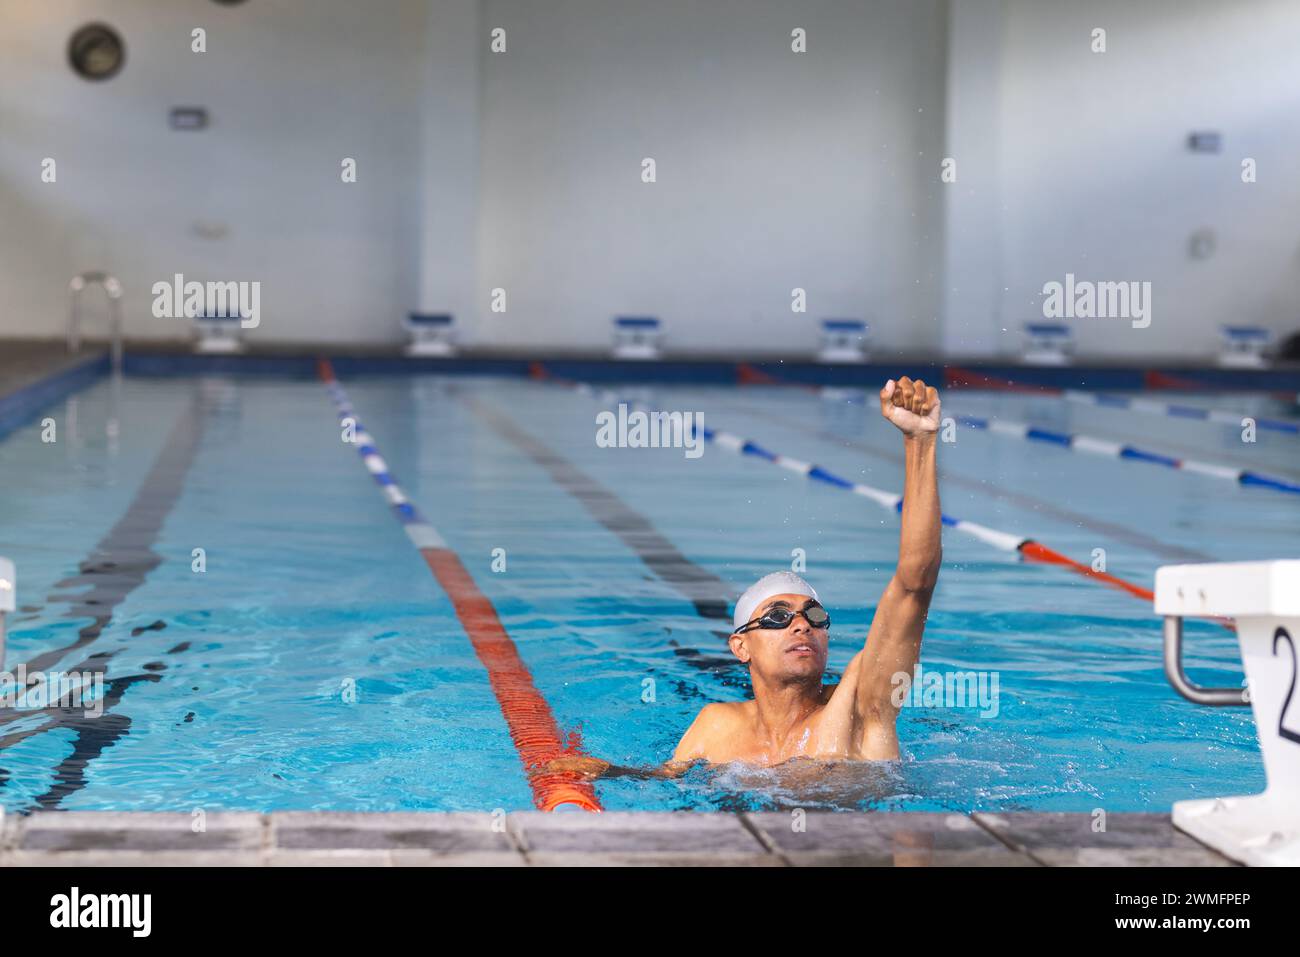 Ein Schwimmer erreicht das Ende des Pools in einer Inneneinrichtung Stockfoto